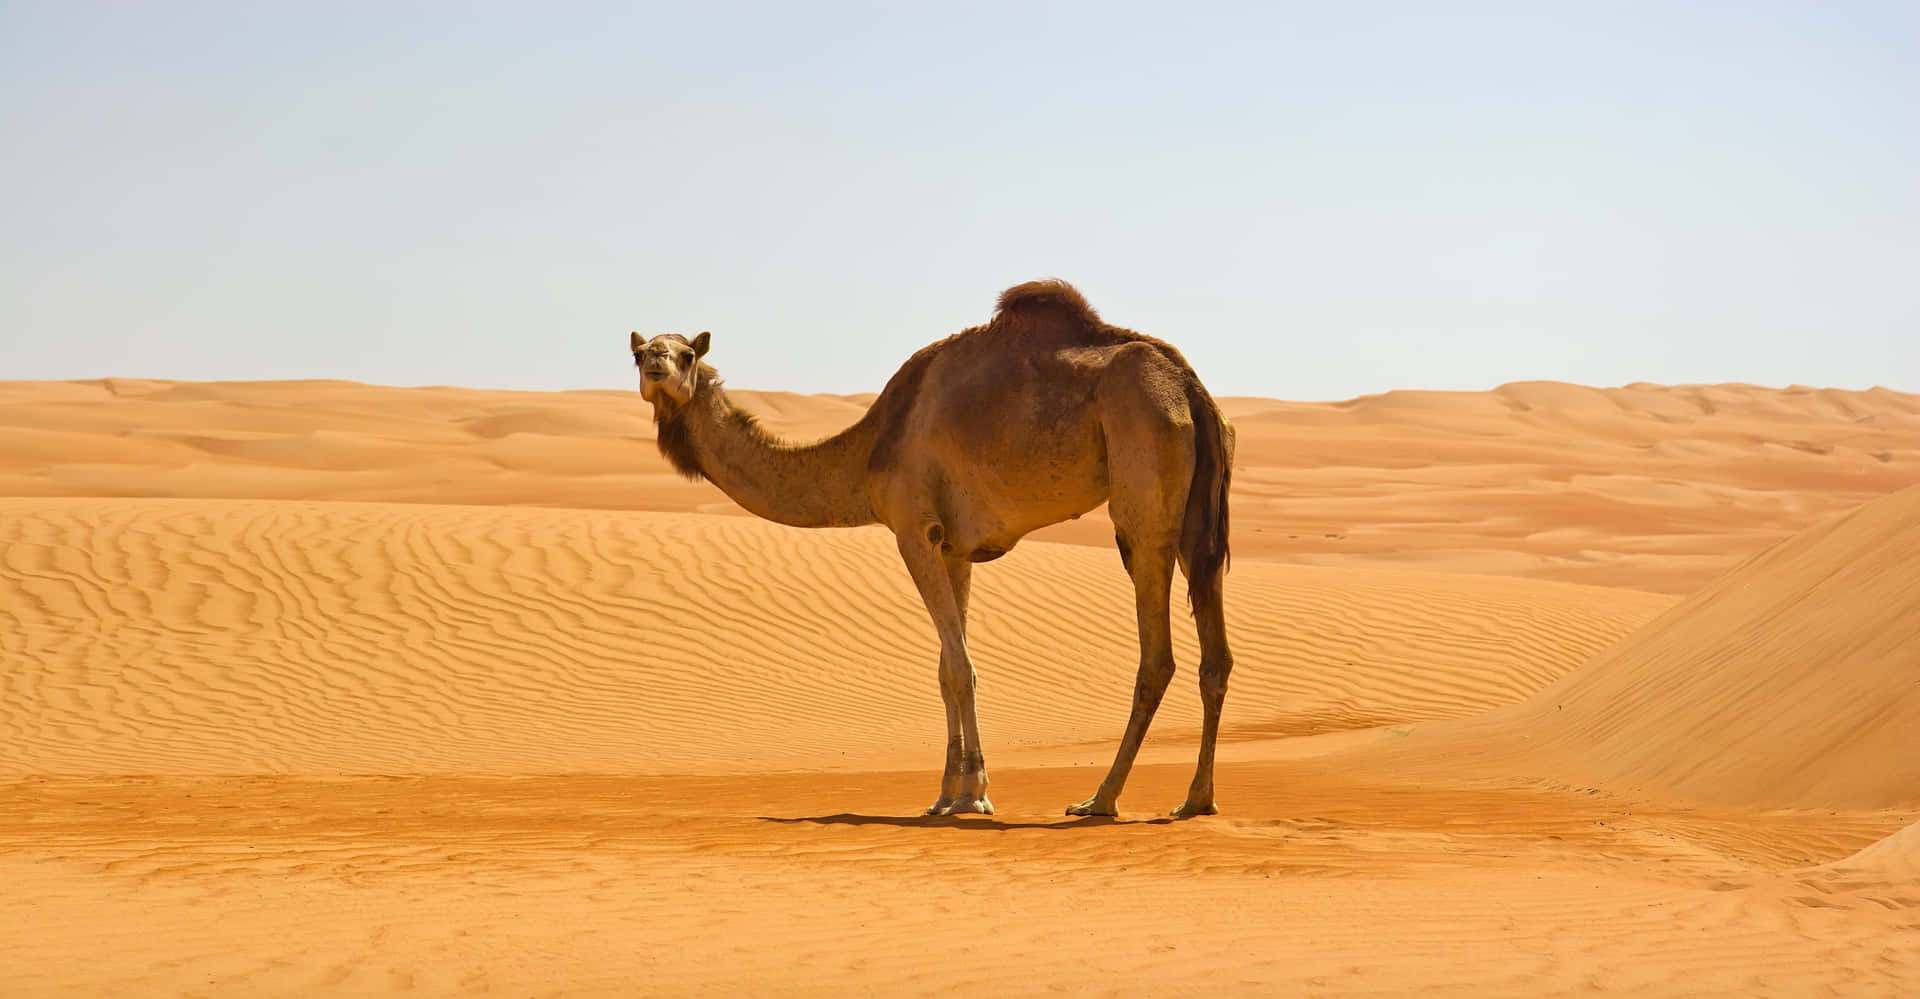 Einkamel In Der Arabischen Wüste, Umgeben Von Nichts Als Sand.